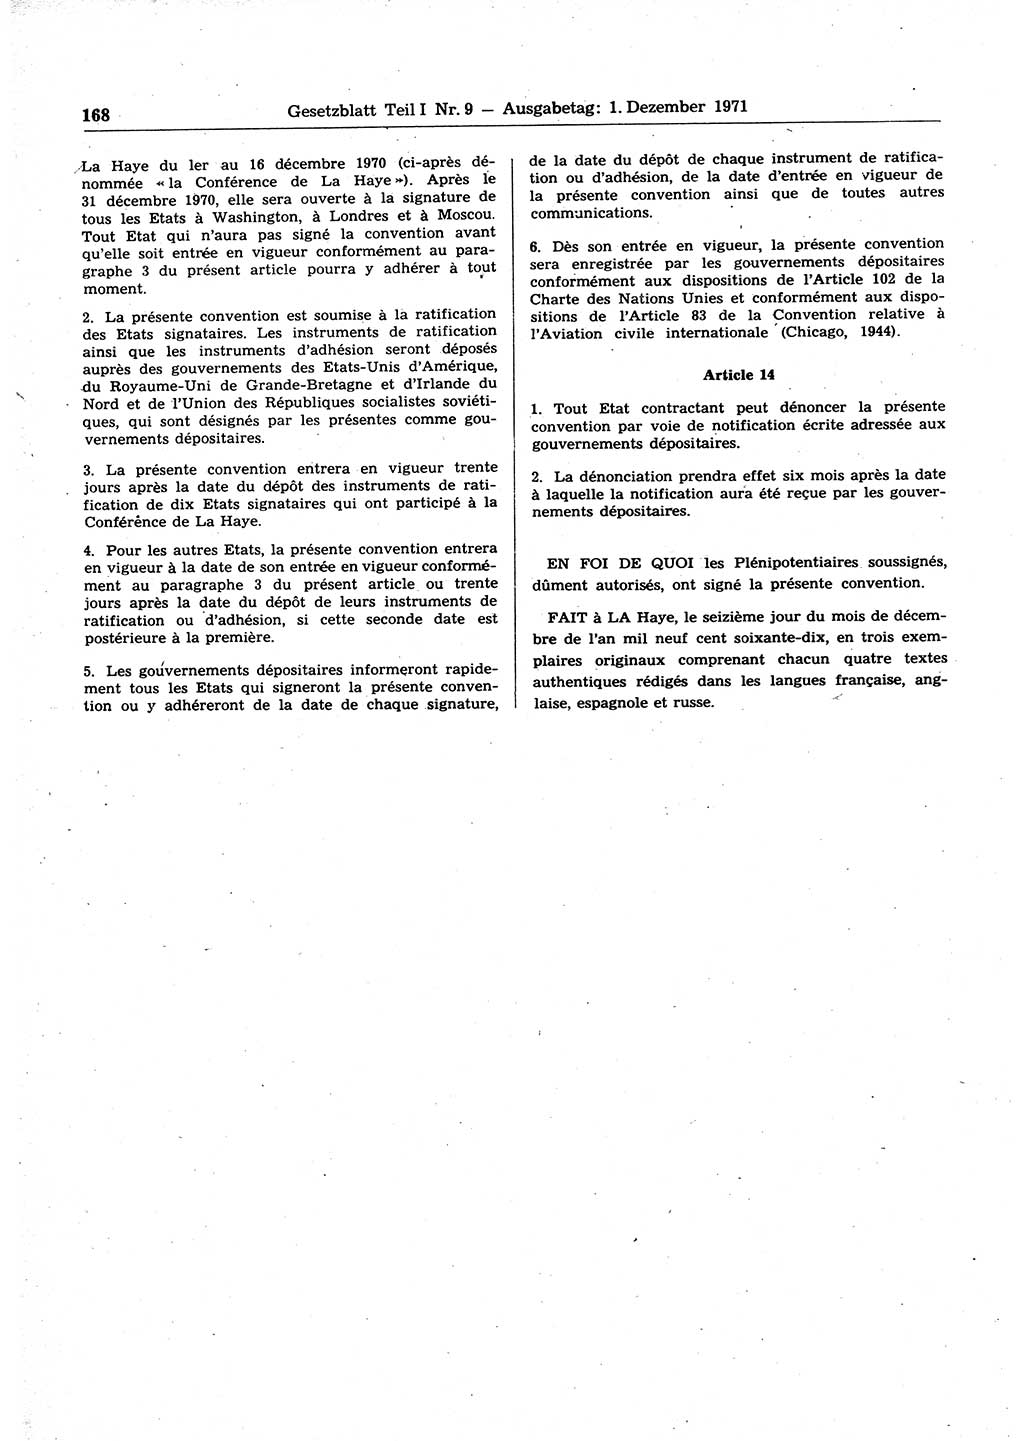 Gesetzblatt (GBl.) der Deutschen Demokratischen Republik (DDR) Teil Ⅰ 1971, Seite 168 (GBl. DDR Ⅰ 1971, S. 168)